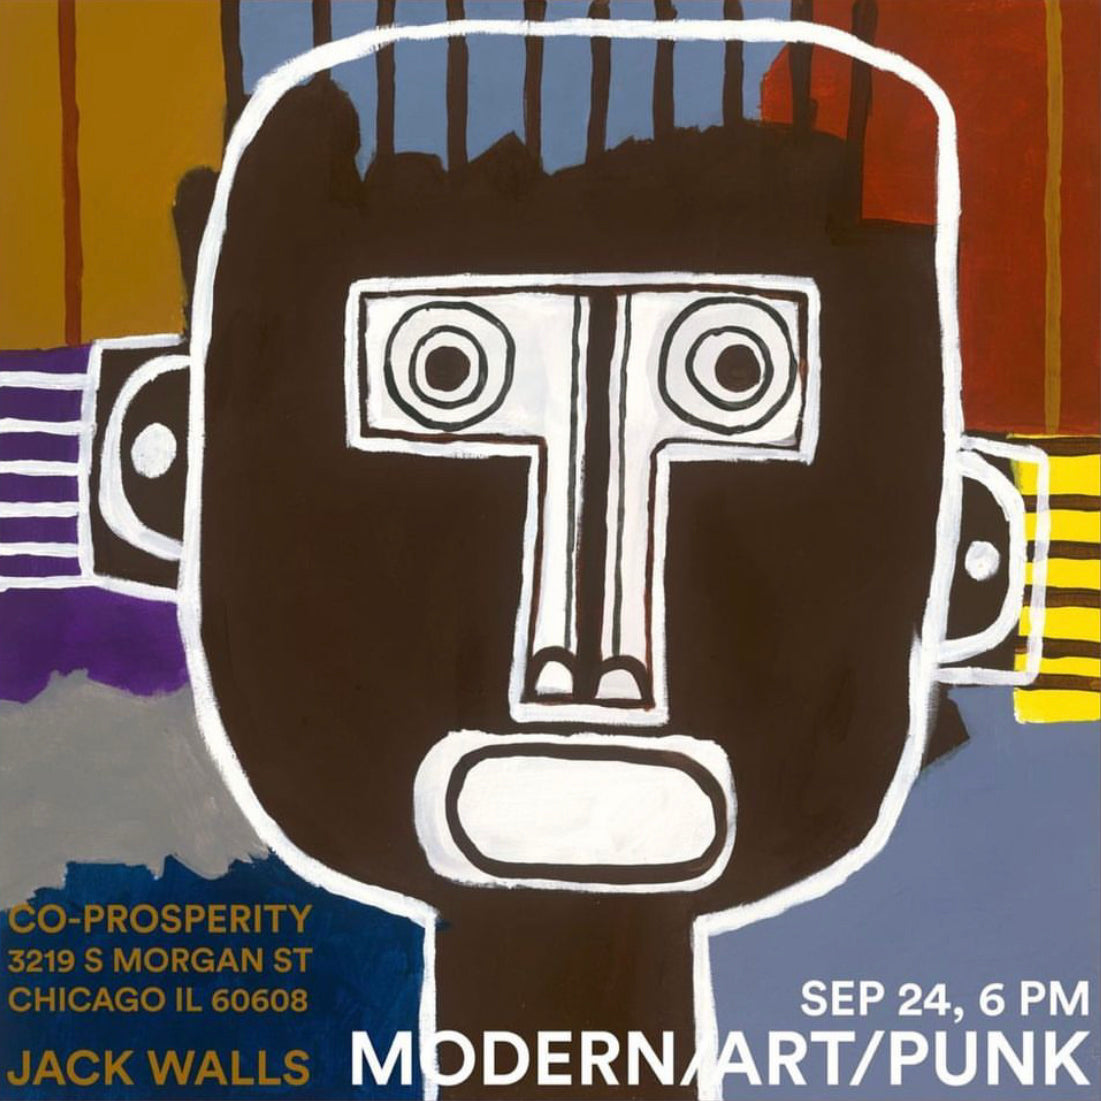 Jack Walls' "MODERN/ART/PUNK Exhibit in Chicago